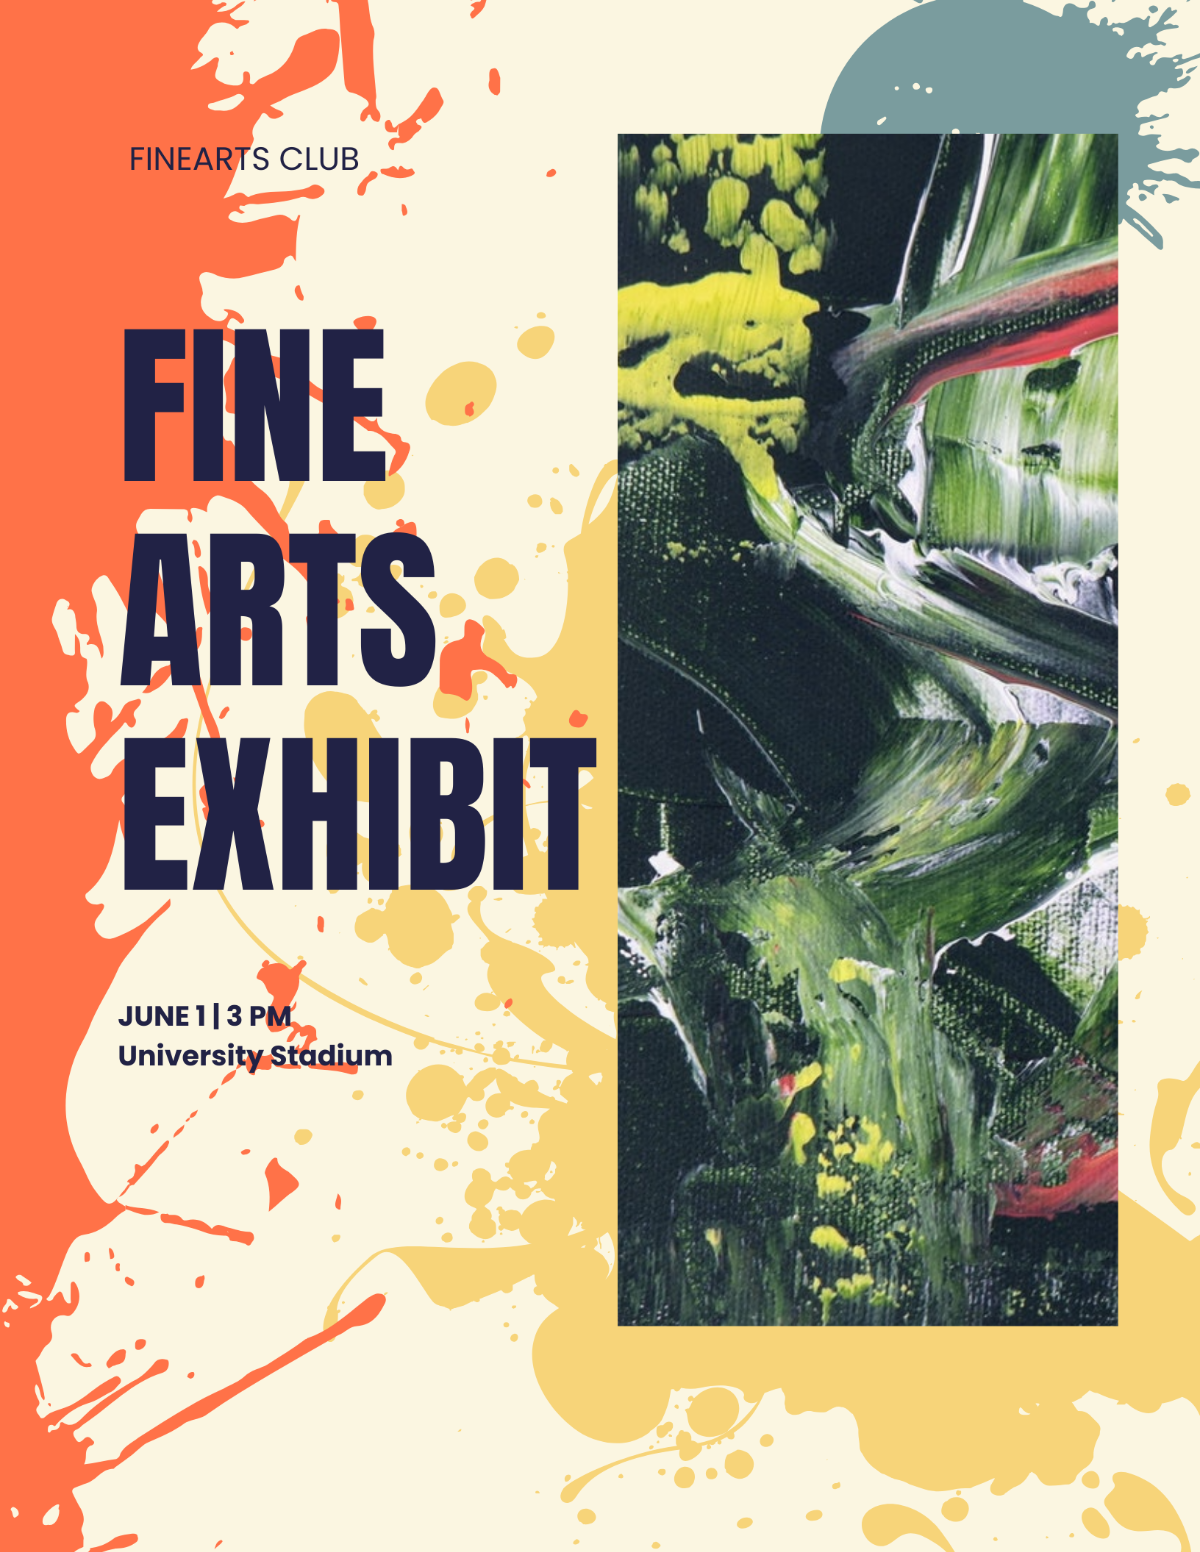 Fine Art Exhibition Flyer